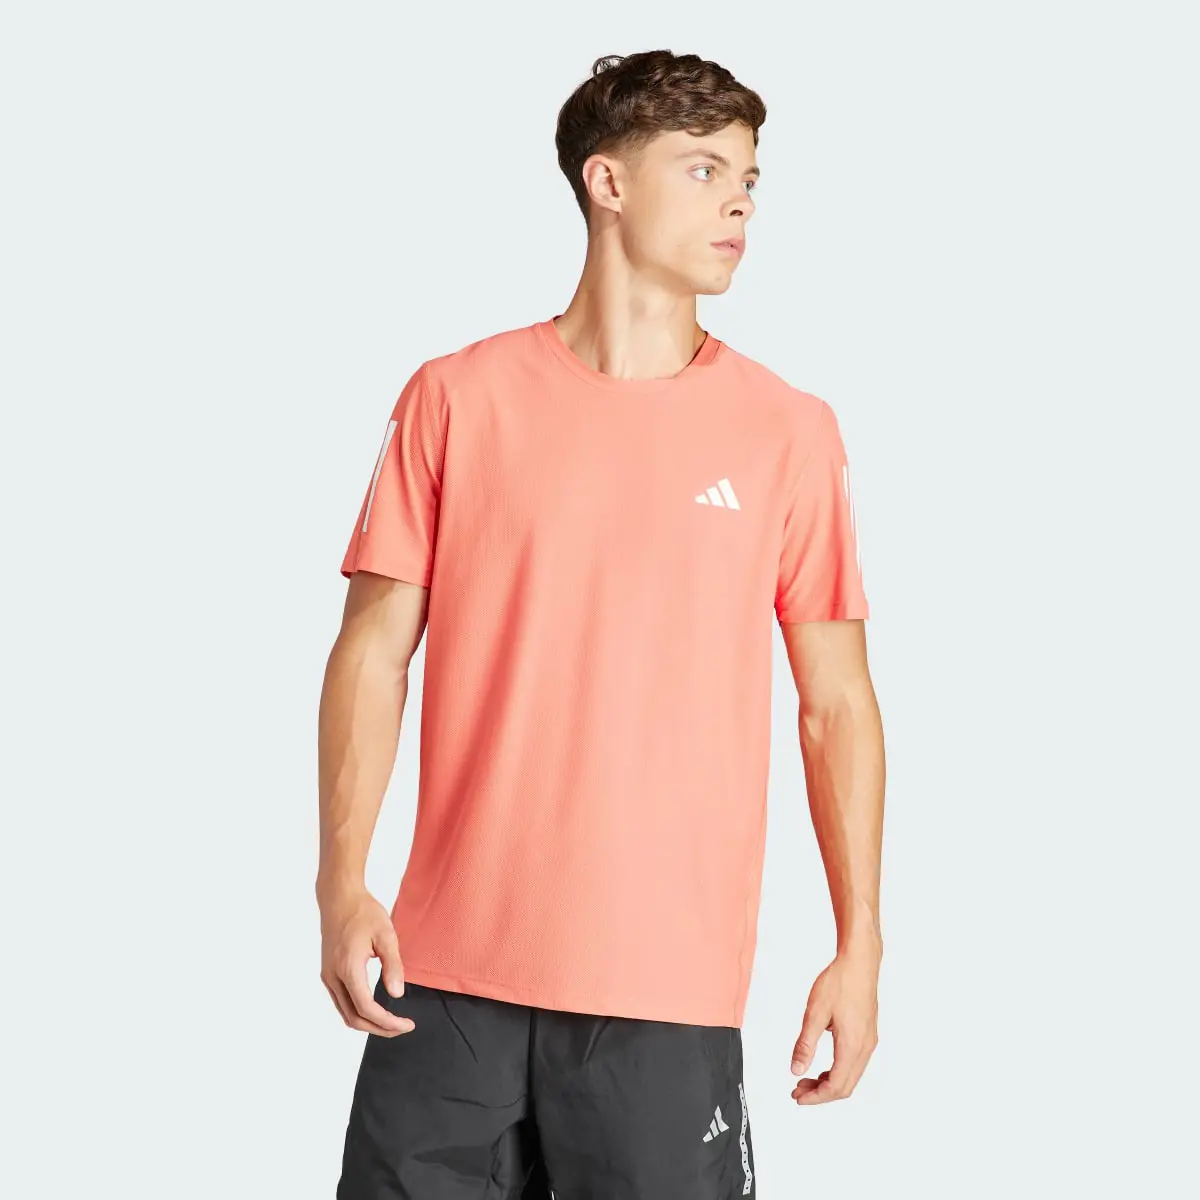 Adidas Own the Run T-Shirt. 2